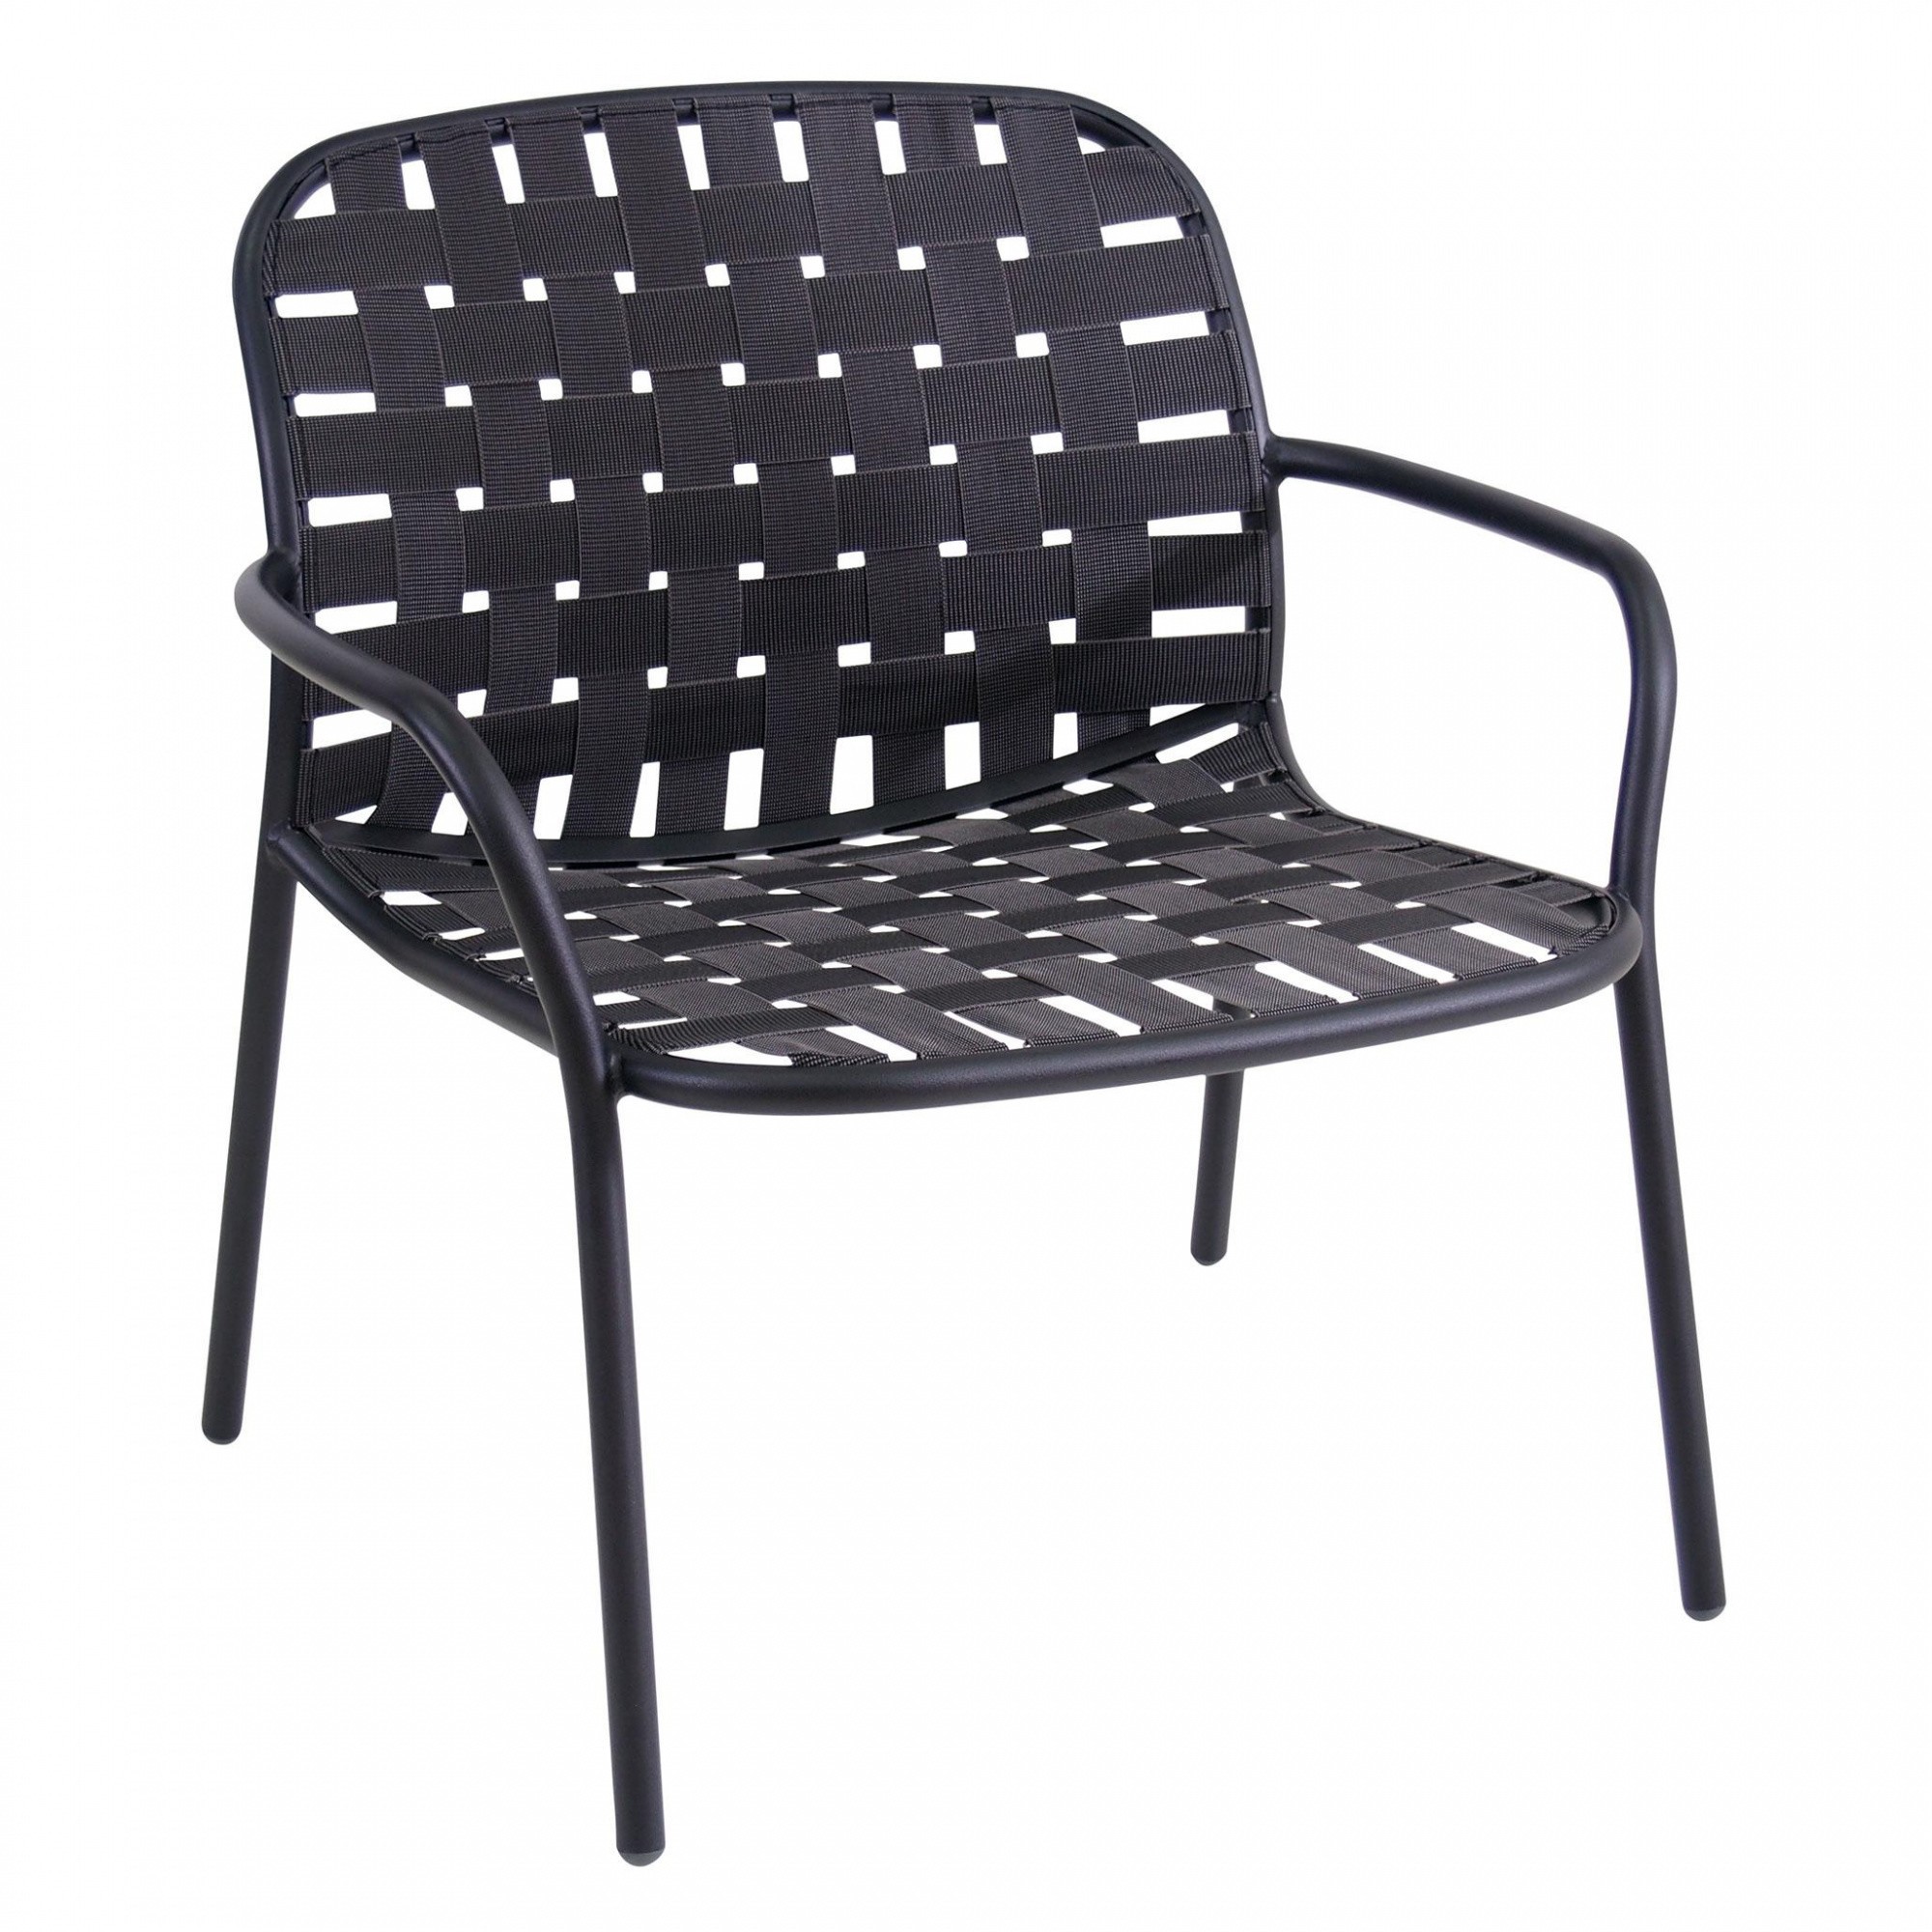 Design Garten Frisch Yard Garden Lounge Chair